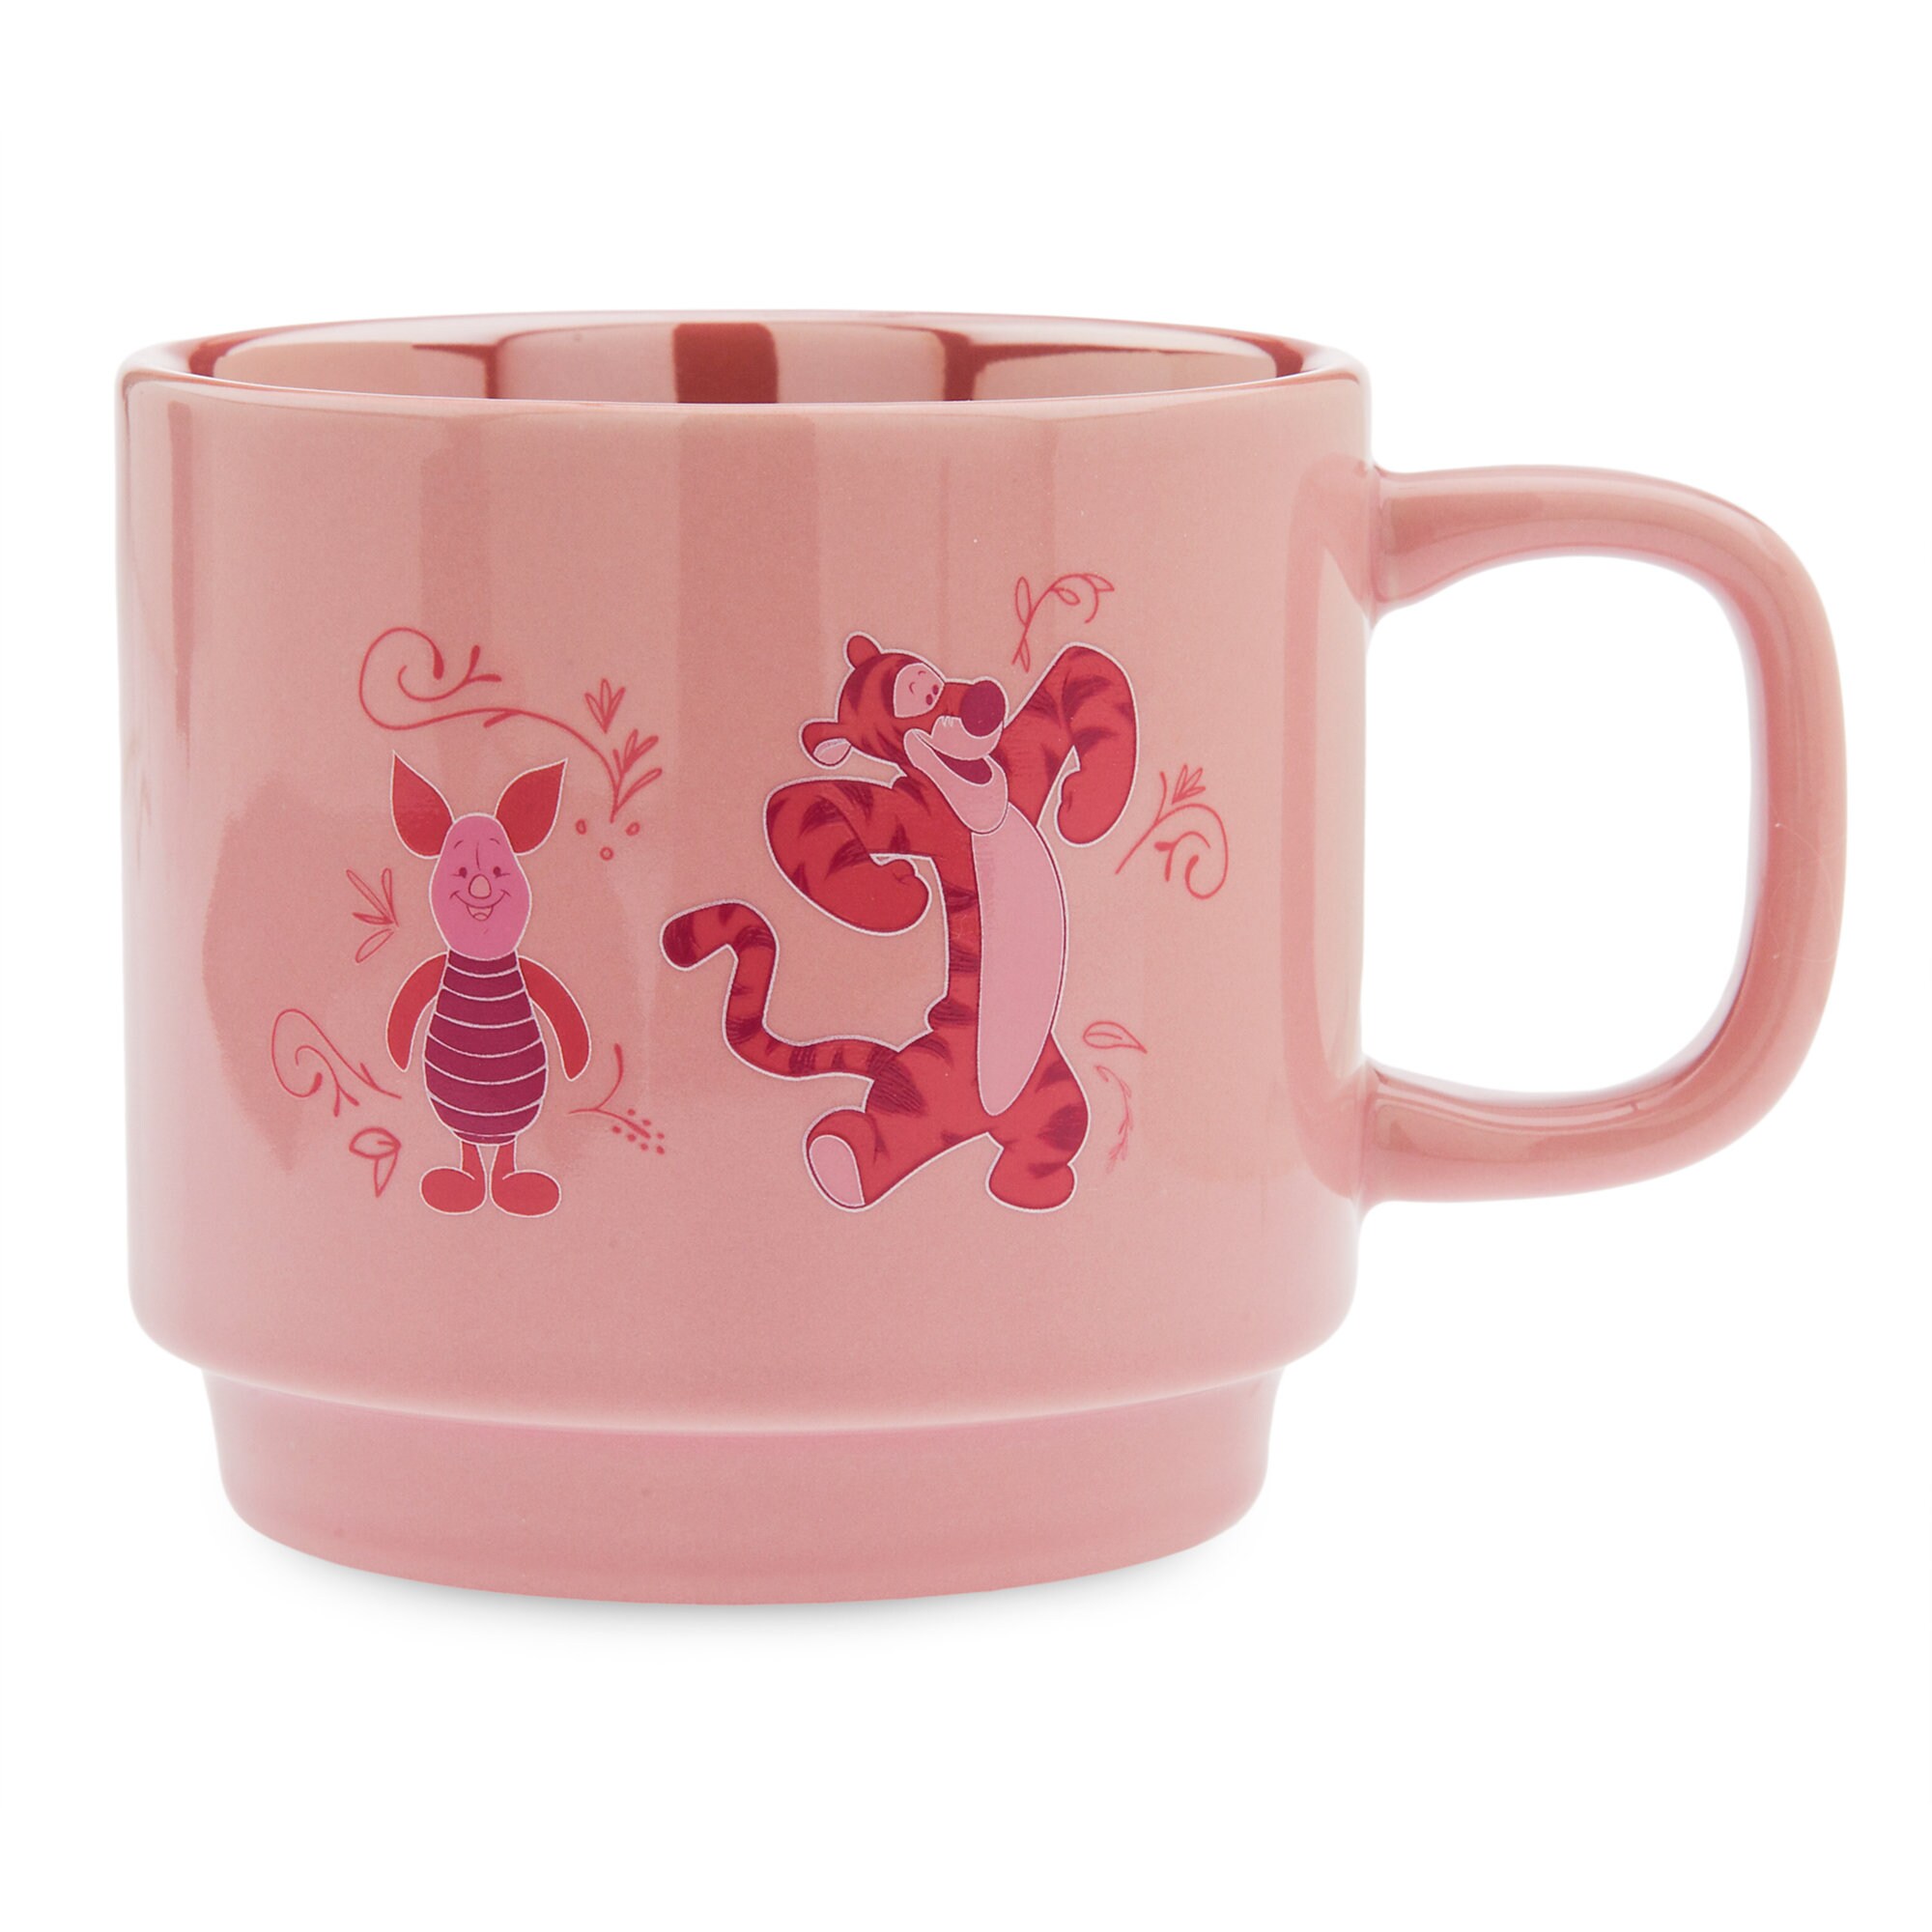 Disney Wisdom Mug - Piglet - April - Limited Release